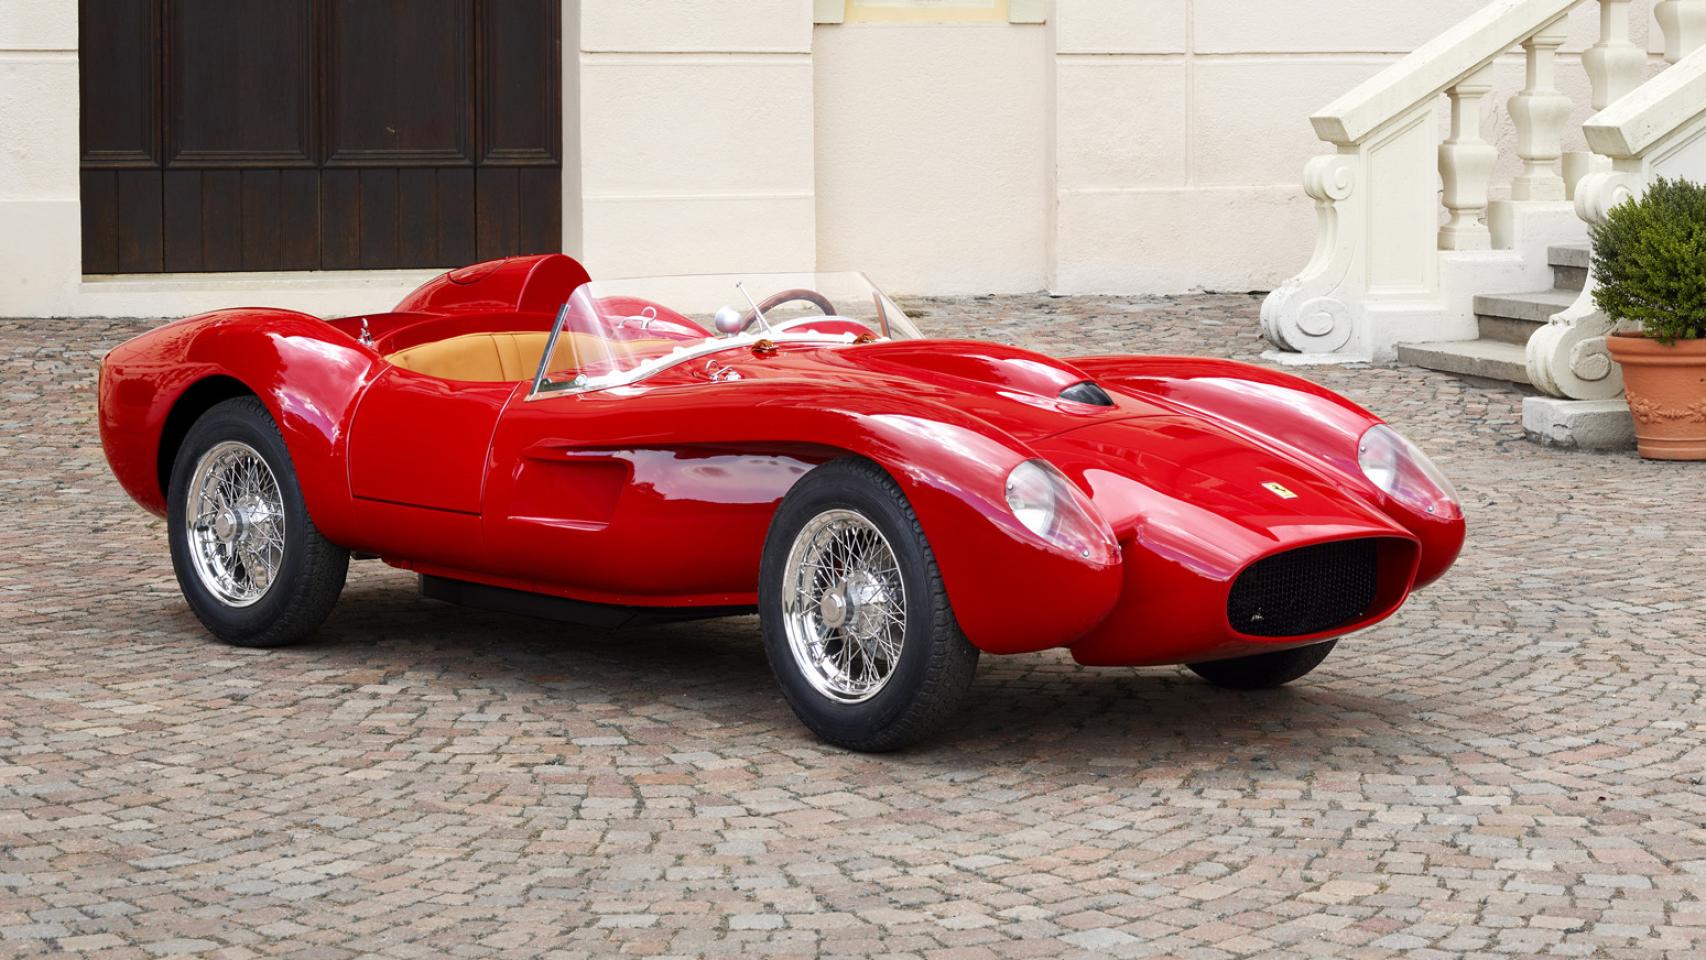 Así es el Ferrari de 'juguete' se puede conducir desde los 14 años y cuesta 93.000 euros